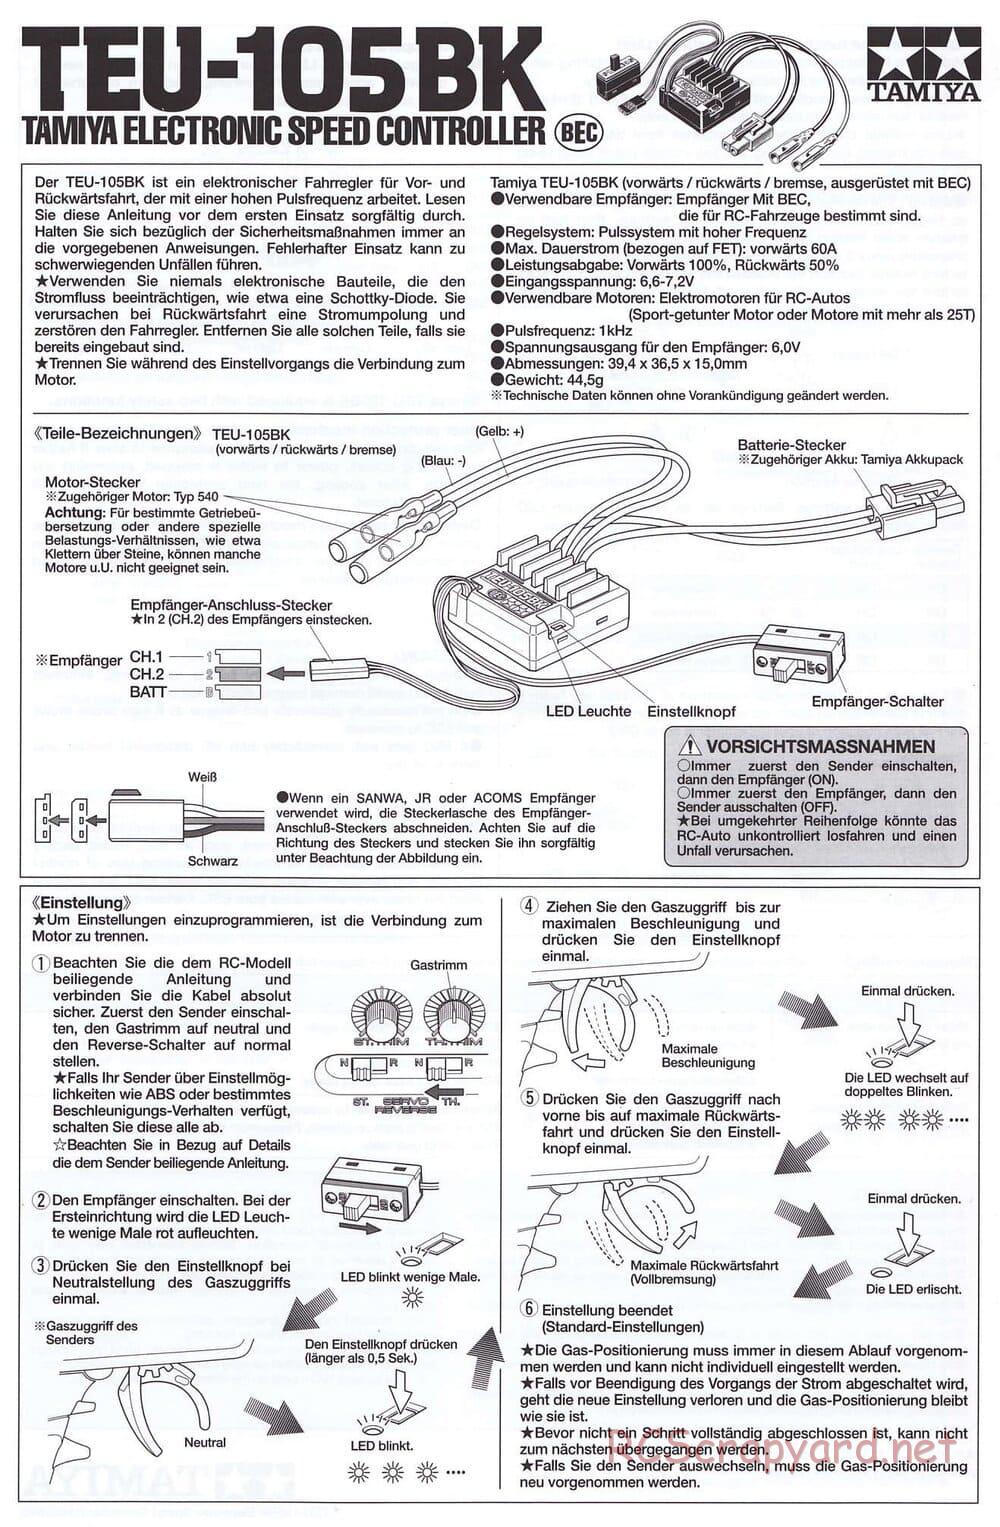 Tamiya - SA TT-02 ESC - Manual - Page 1